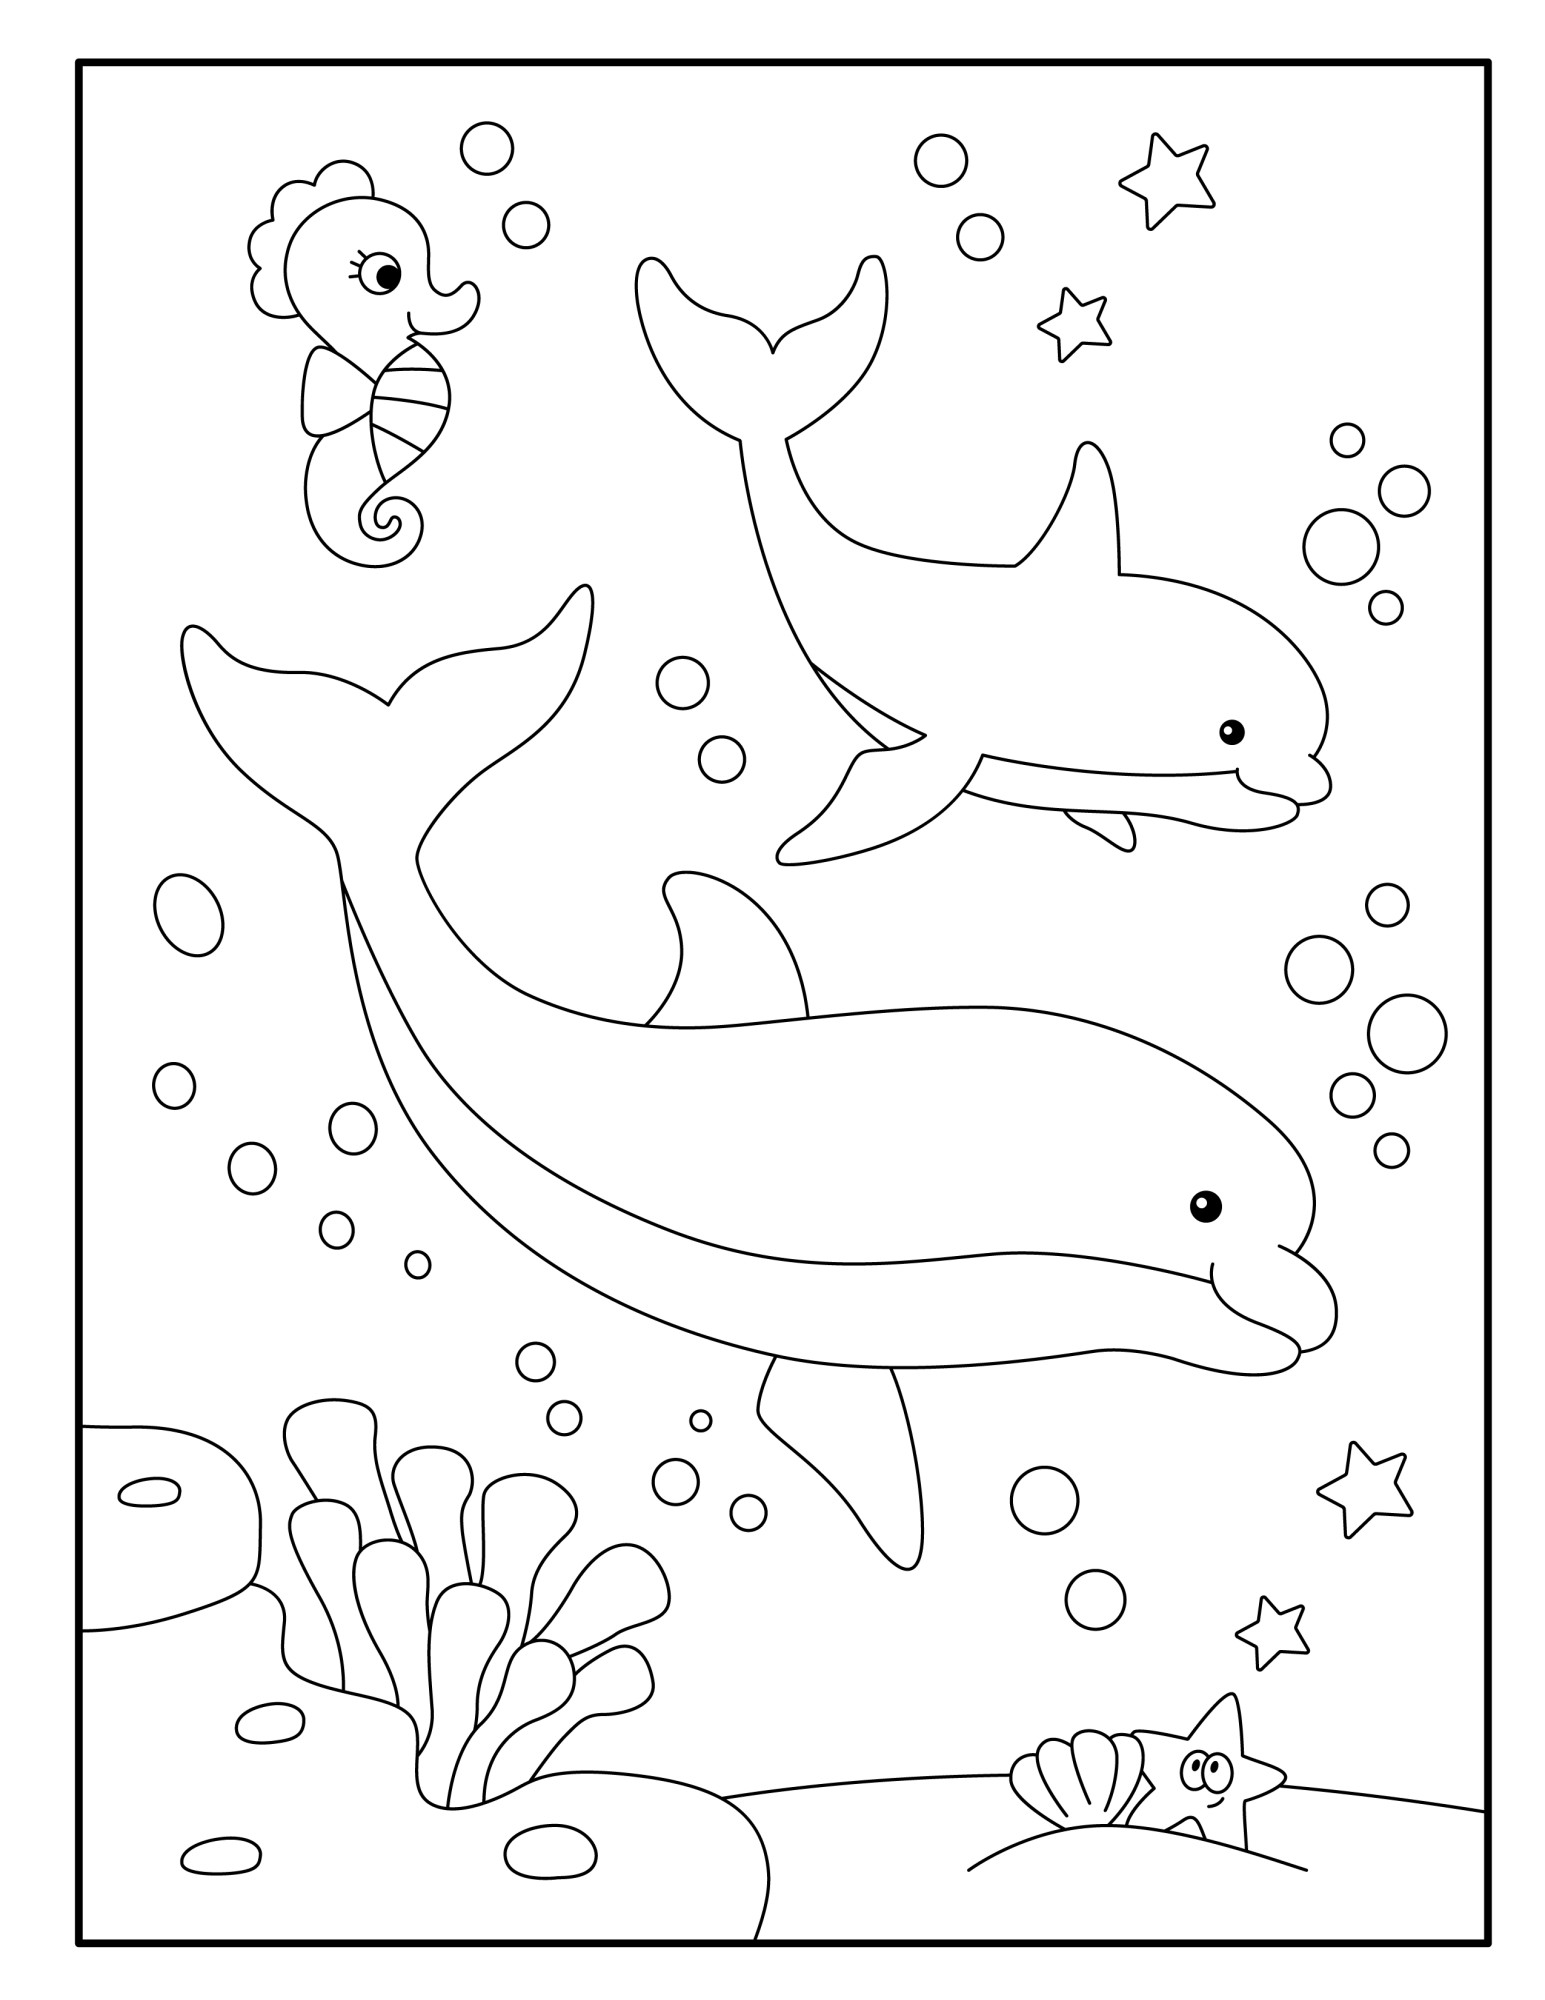 Раскраска для детей: два дельфина и морской конек под водой